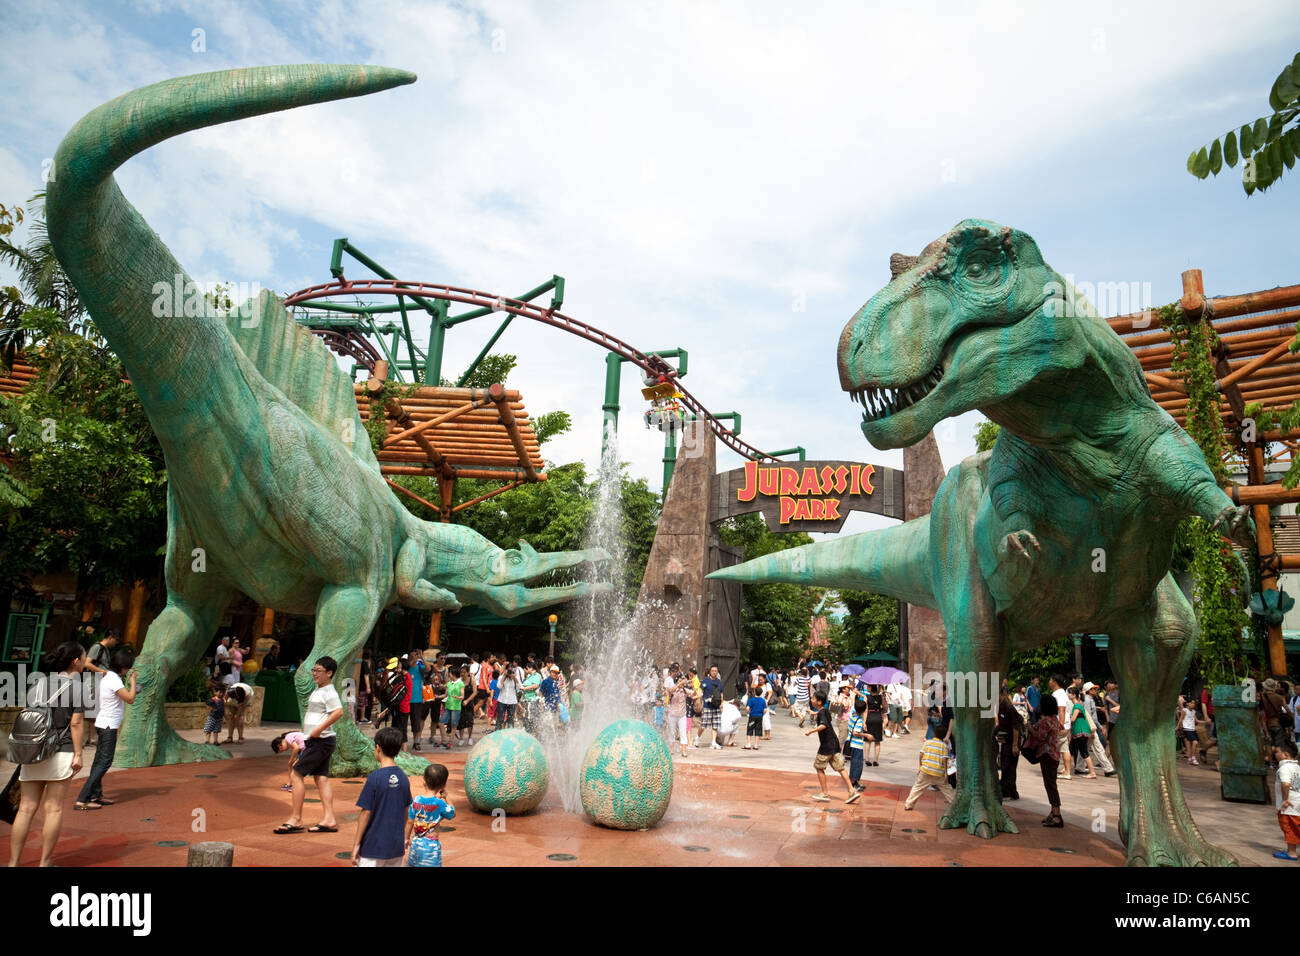 Die Jurassic Park-Attraktion bei Universal Studios Singapur Asien Stockfoto